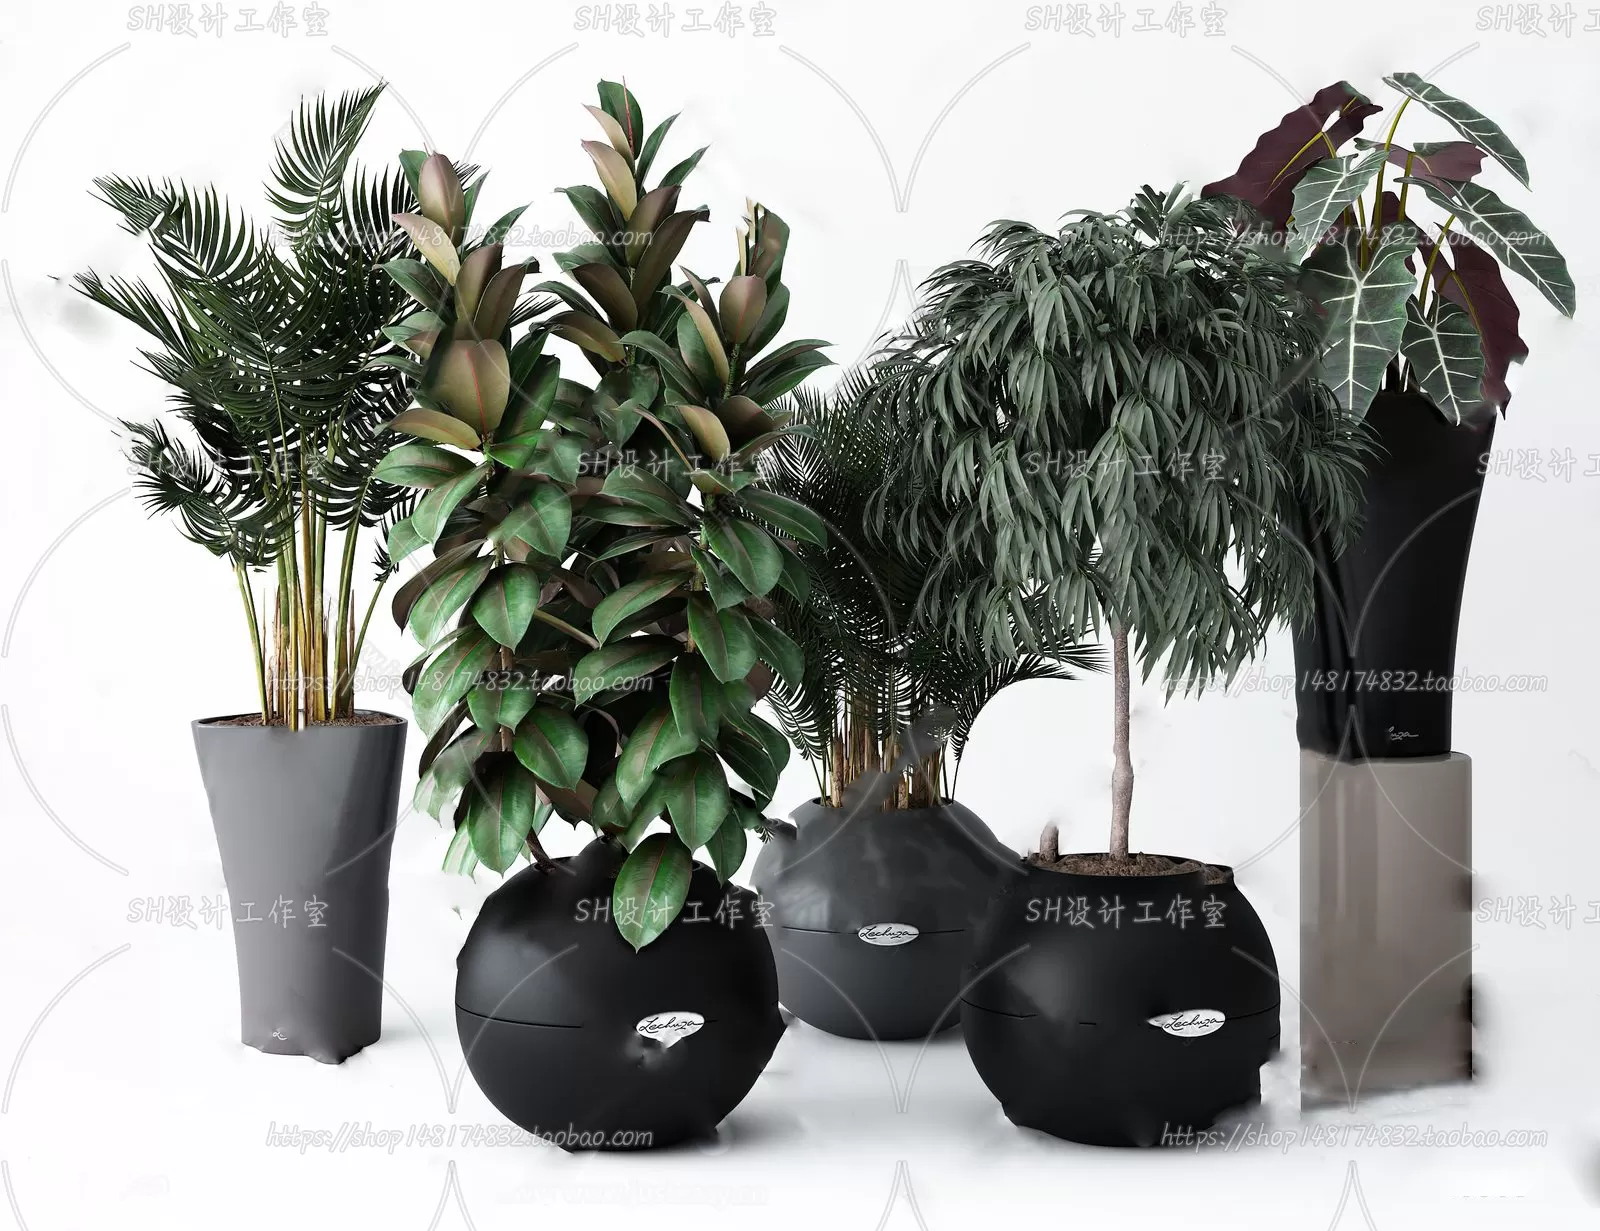 PLANT 3D MODELS – 081